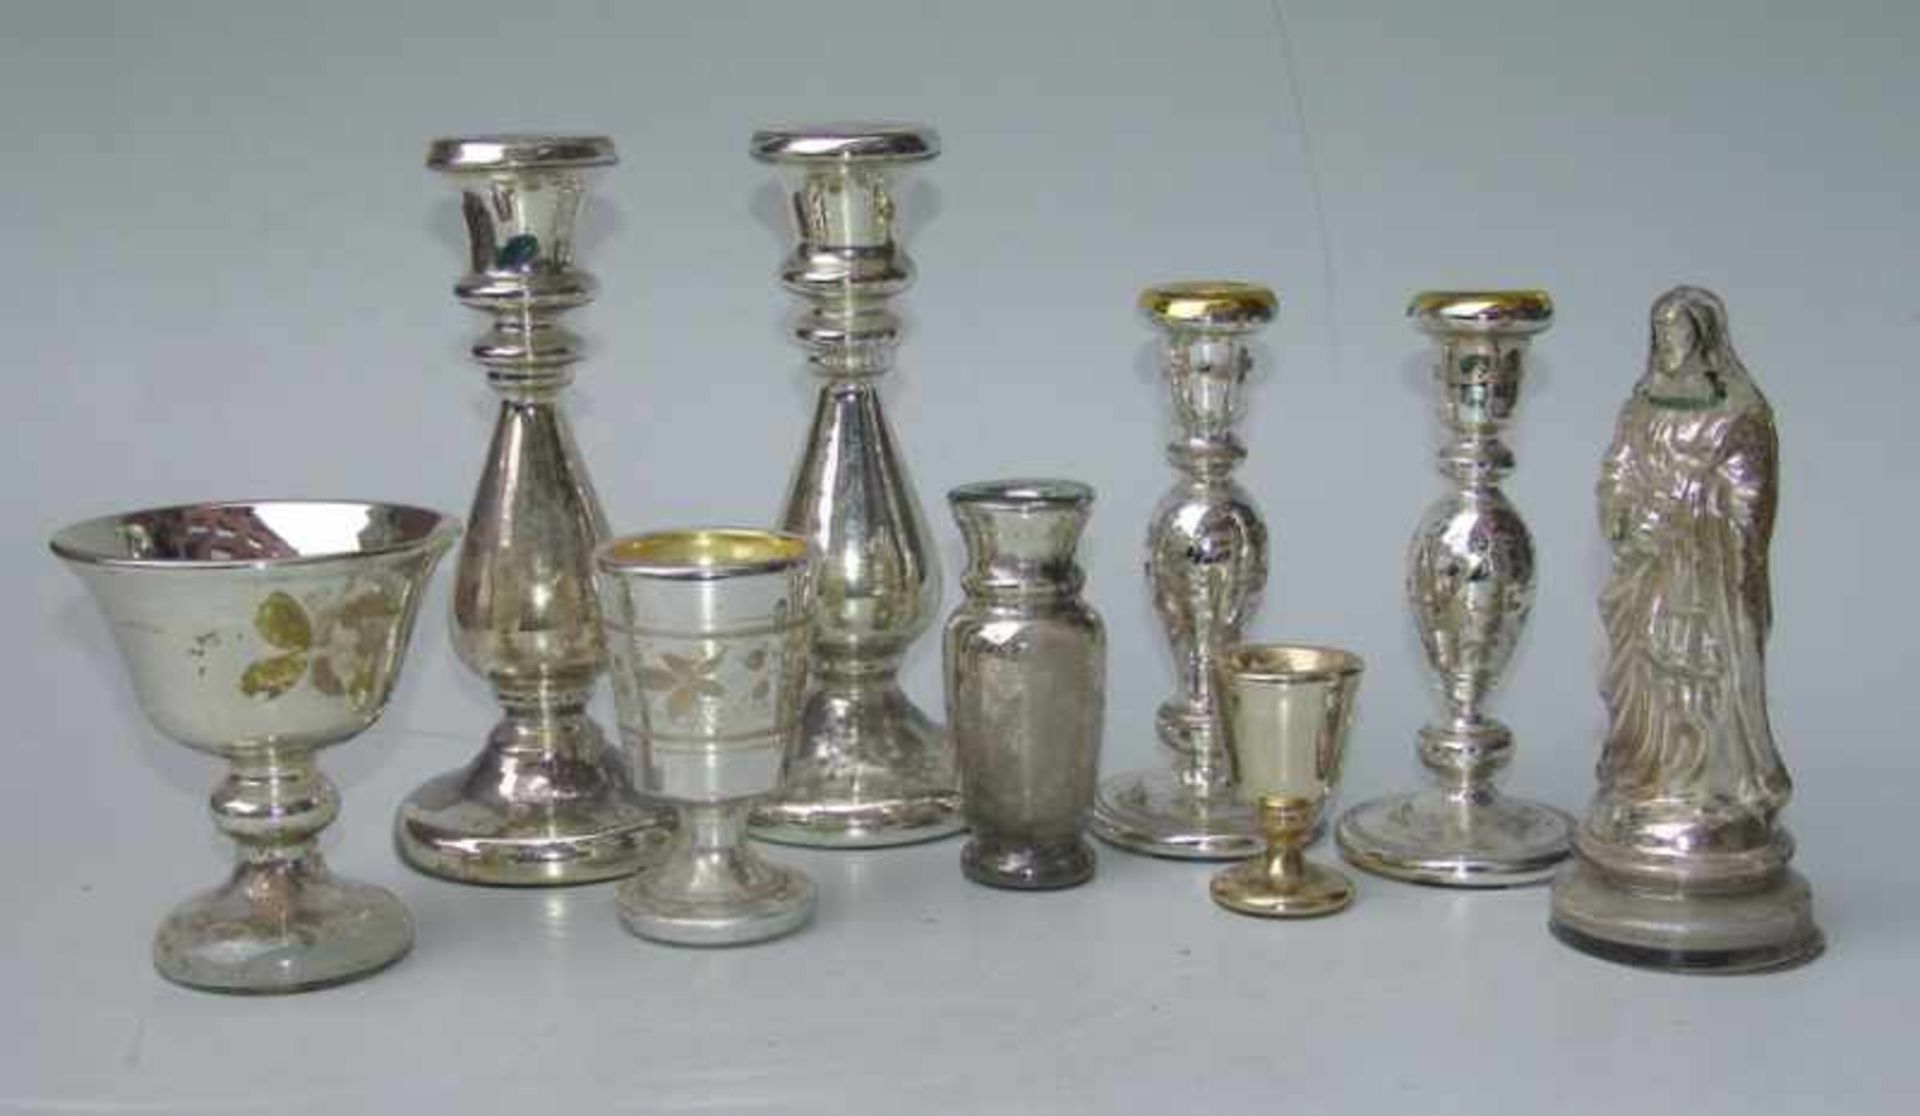 Sammlung Bauernsilber/Silberglas, 19.Jhd., 9 Teile in Holzmodeln geblasenes Glas mit